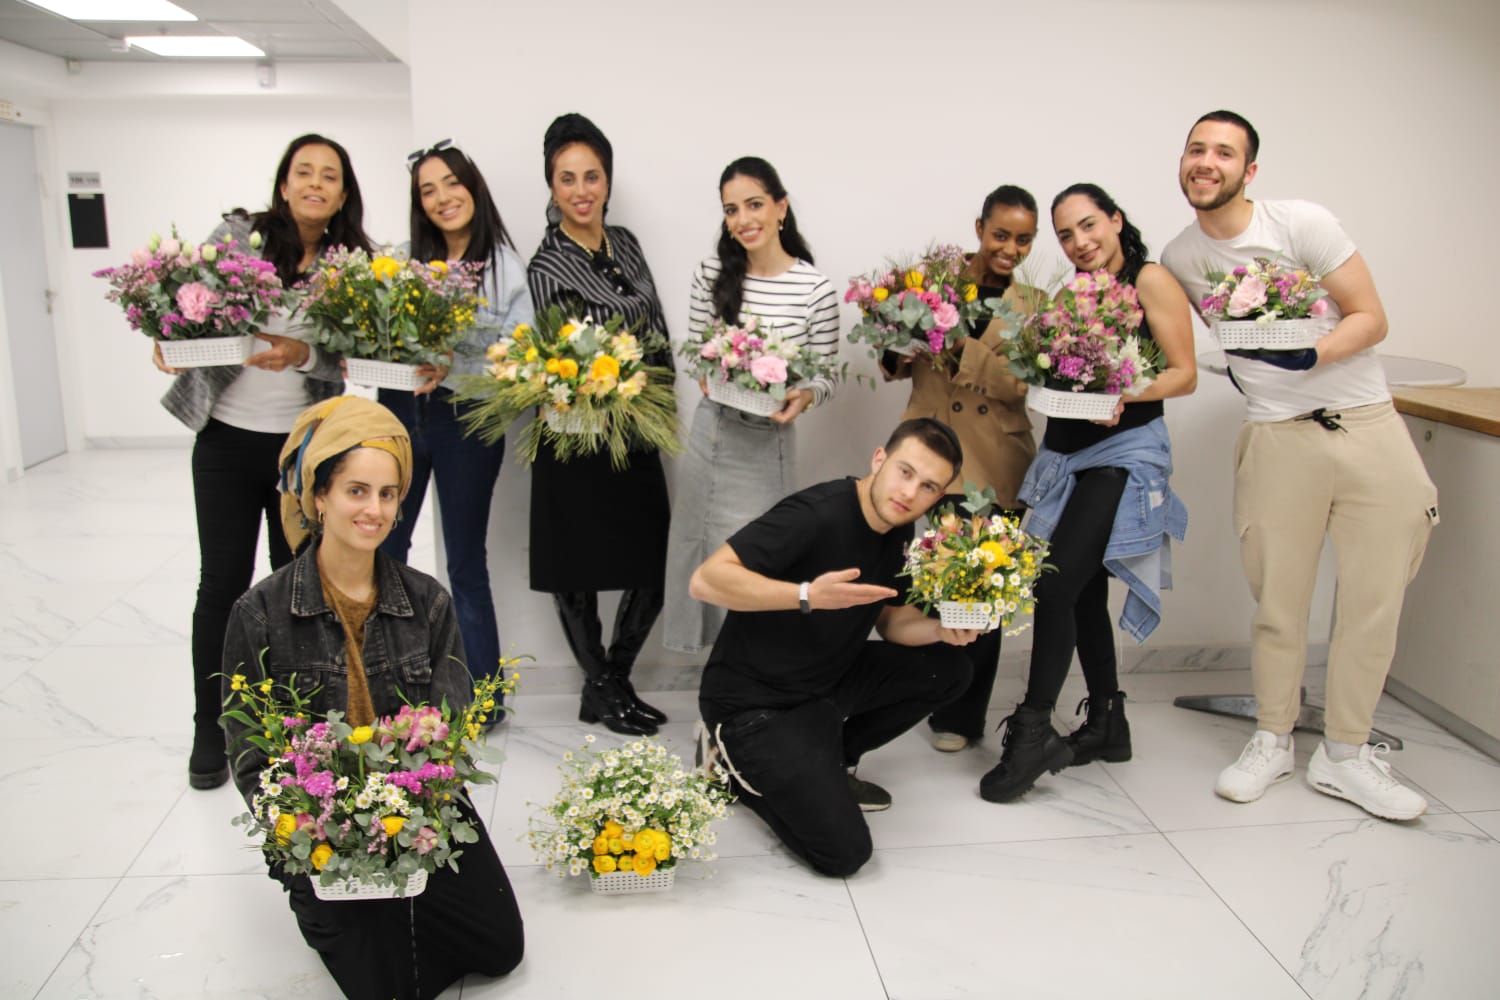 גלרייה - שיעור עיצוב ושזירת פרחים בקורס ניהול עיצוב והפקת אירועים מחזור 33, 22 מתוך 22